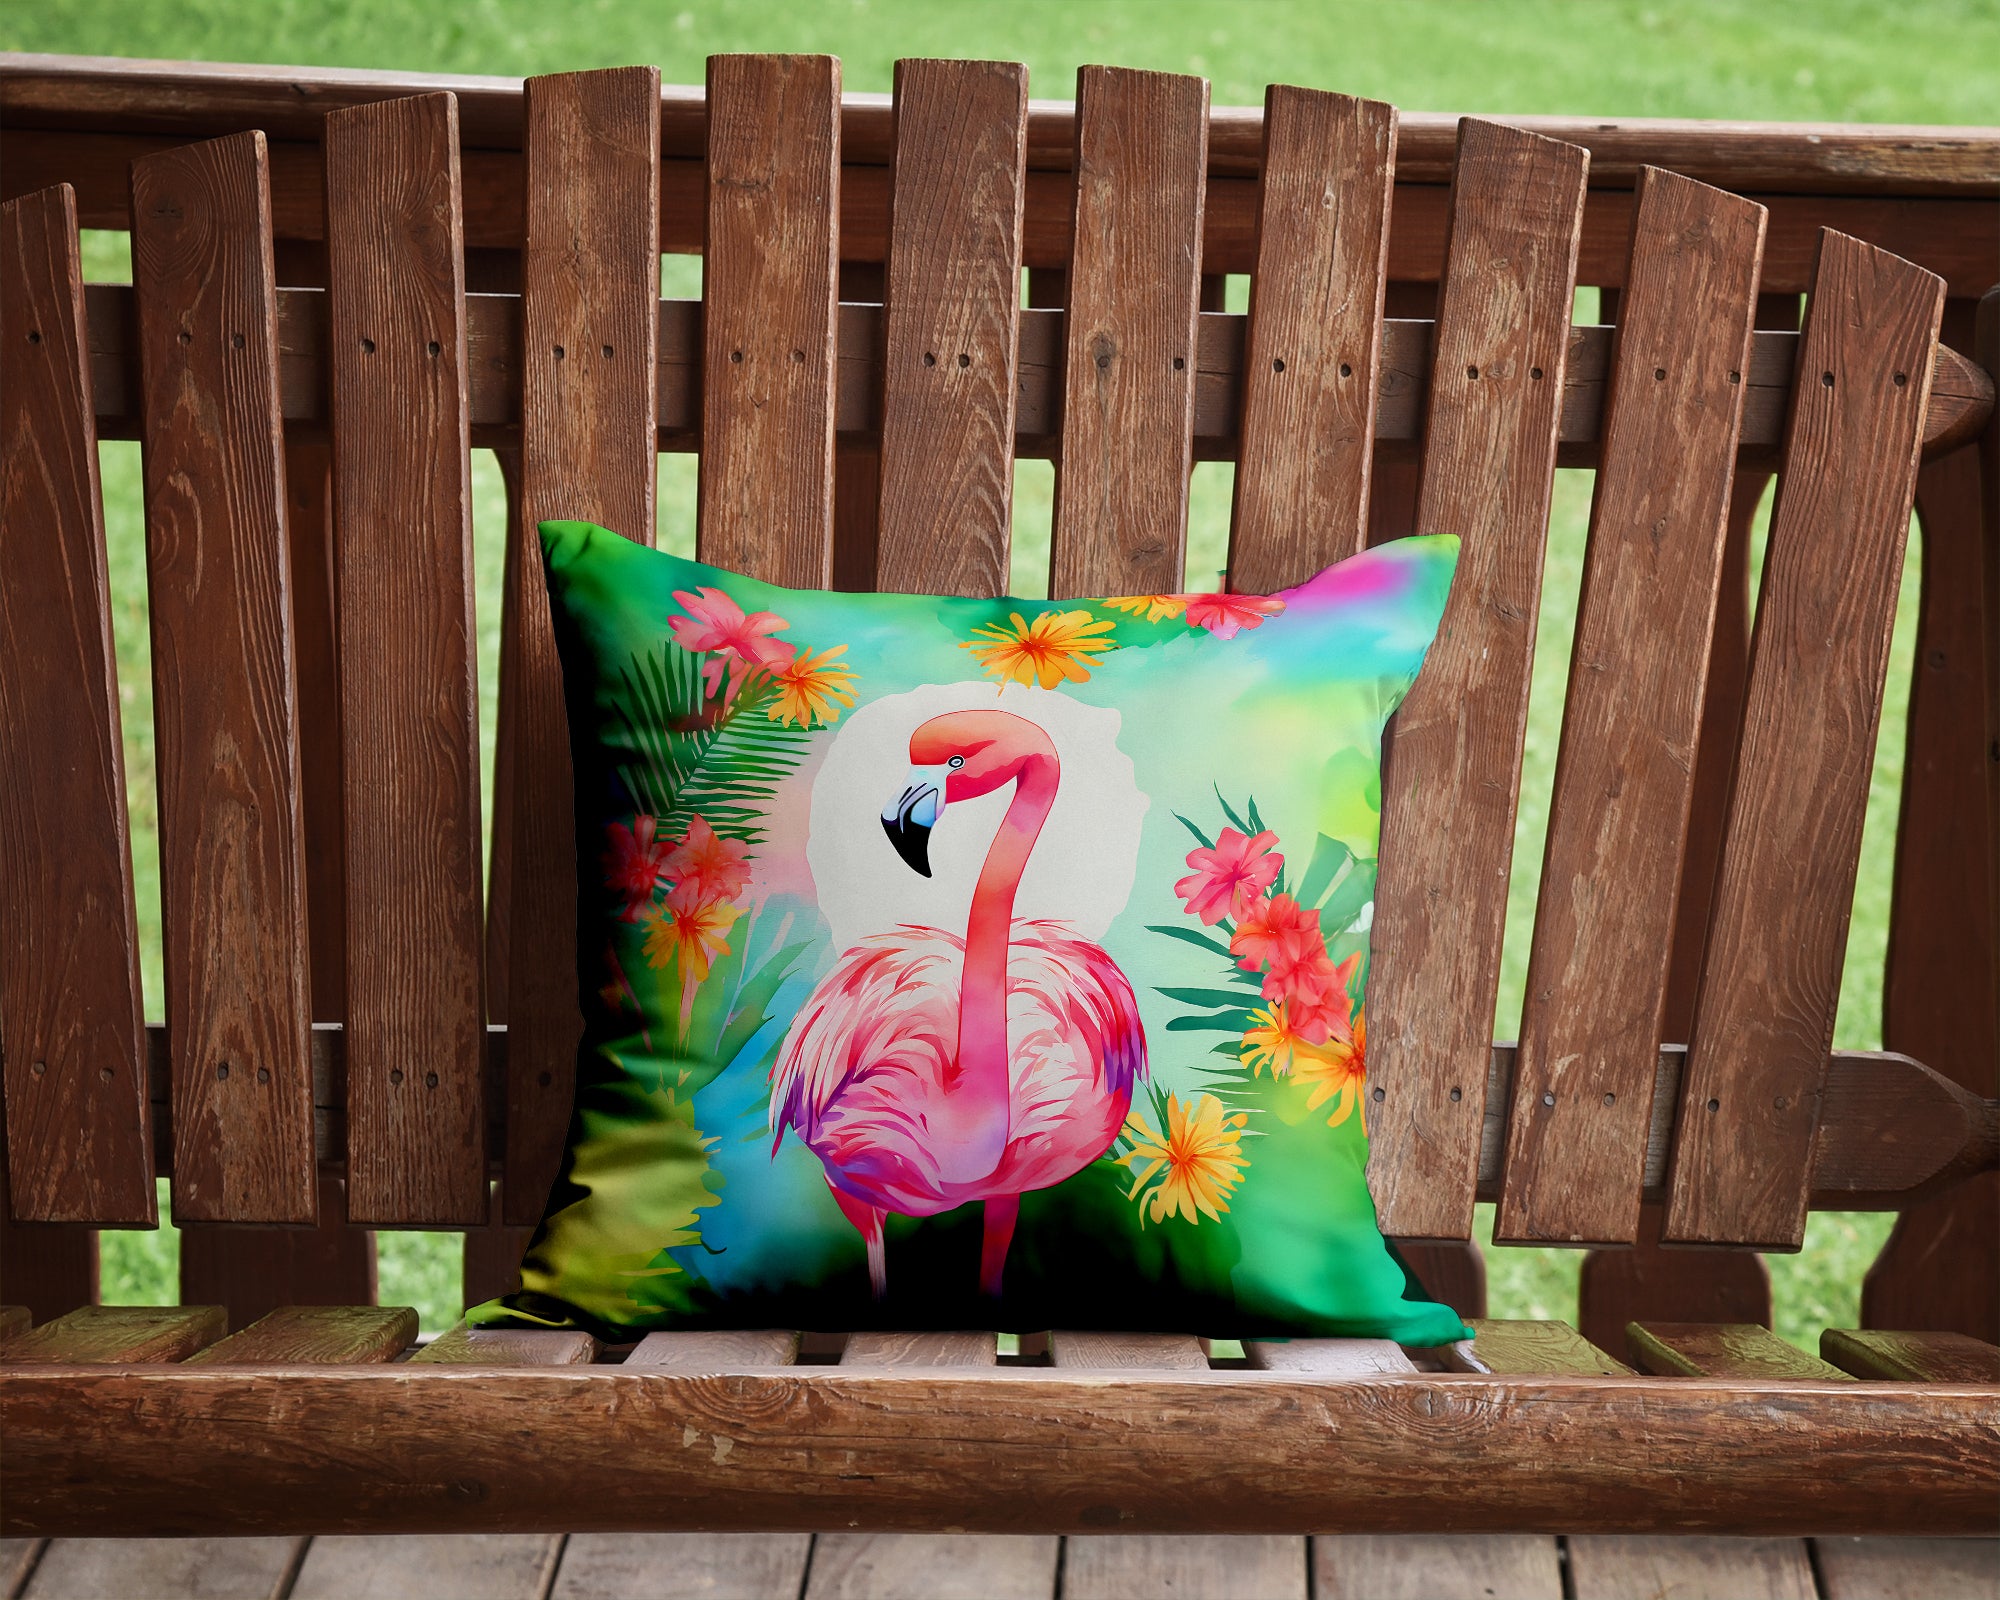 Buy this Hippie Animal Flamingo Throw Pillow